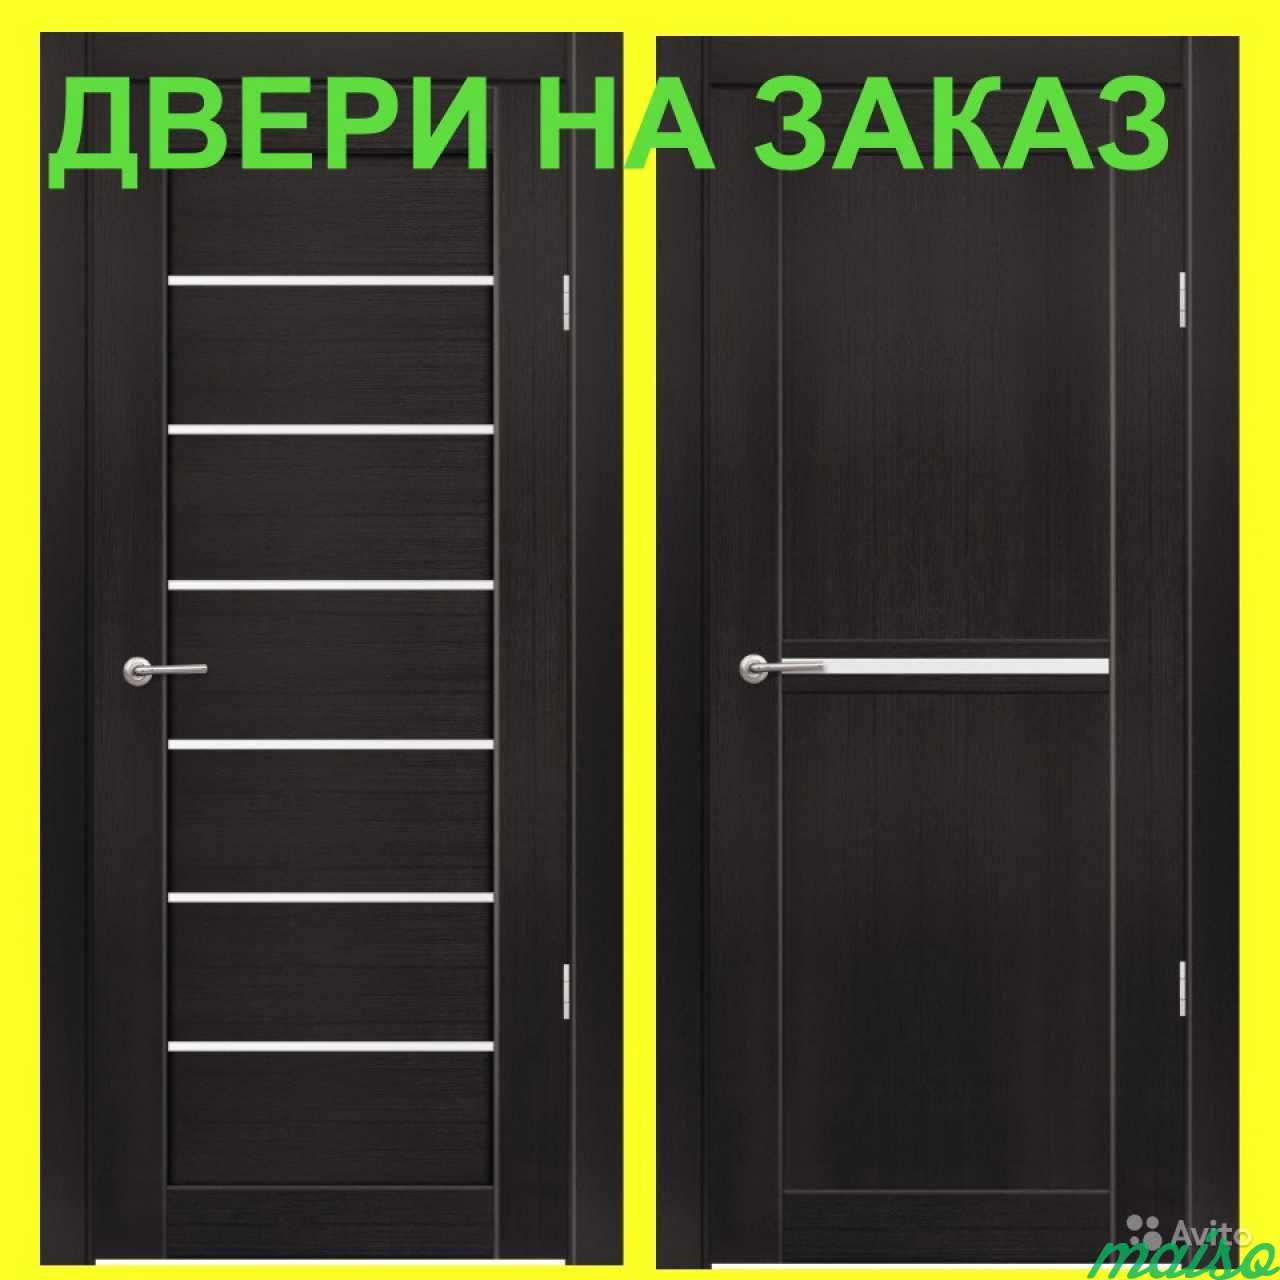 Двери межкомнатные на заказ в Санкт-Петербурге. Фото 2